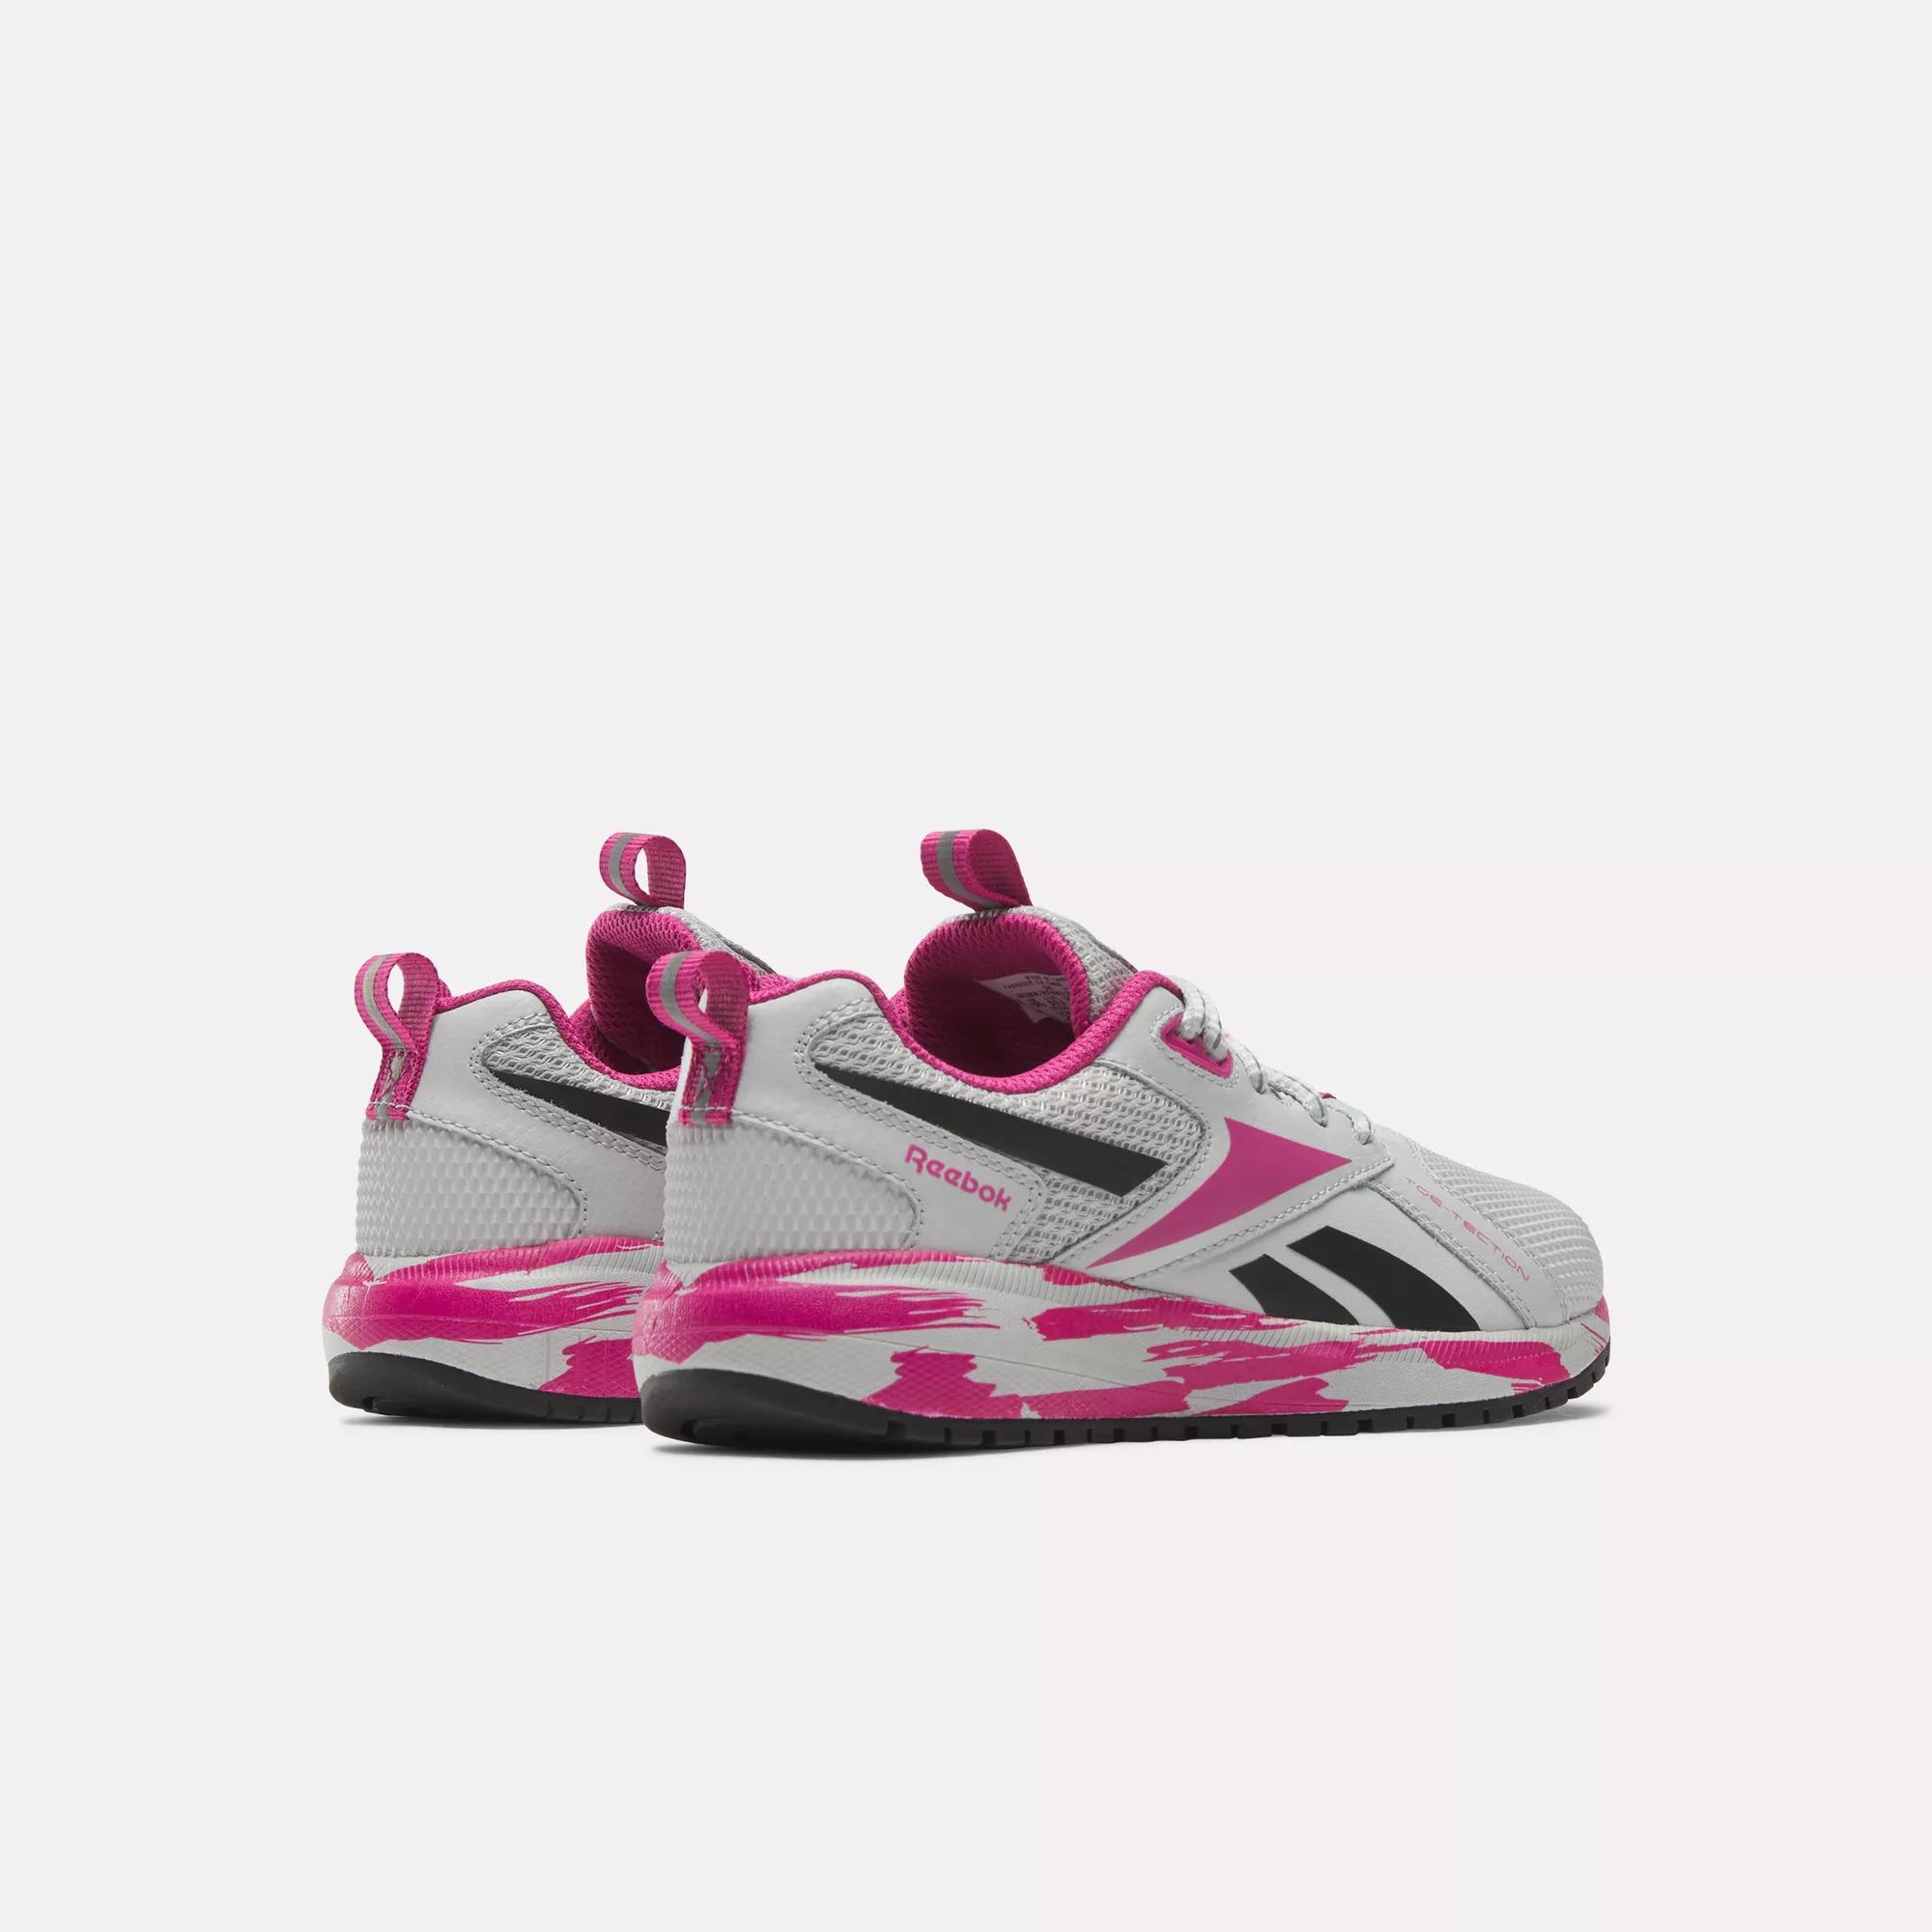 Reebok Durable XT Shoes - Preschool - Steely Fog / Semi Proud Pink / Core  Black | Reebok